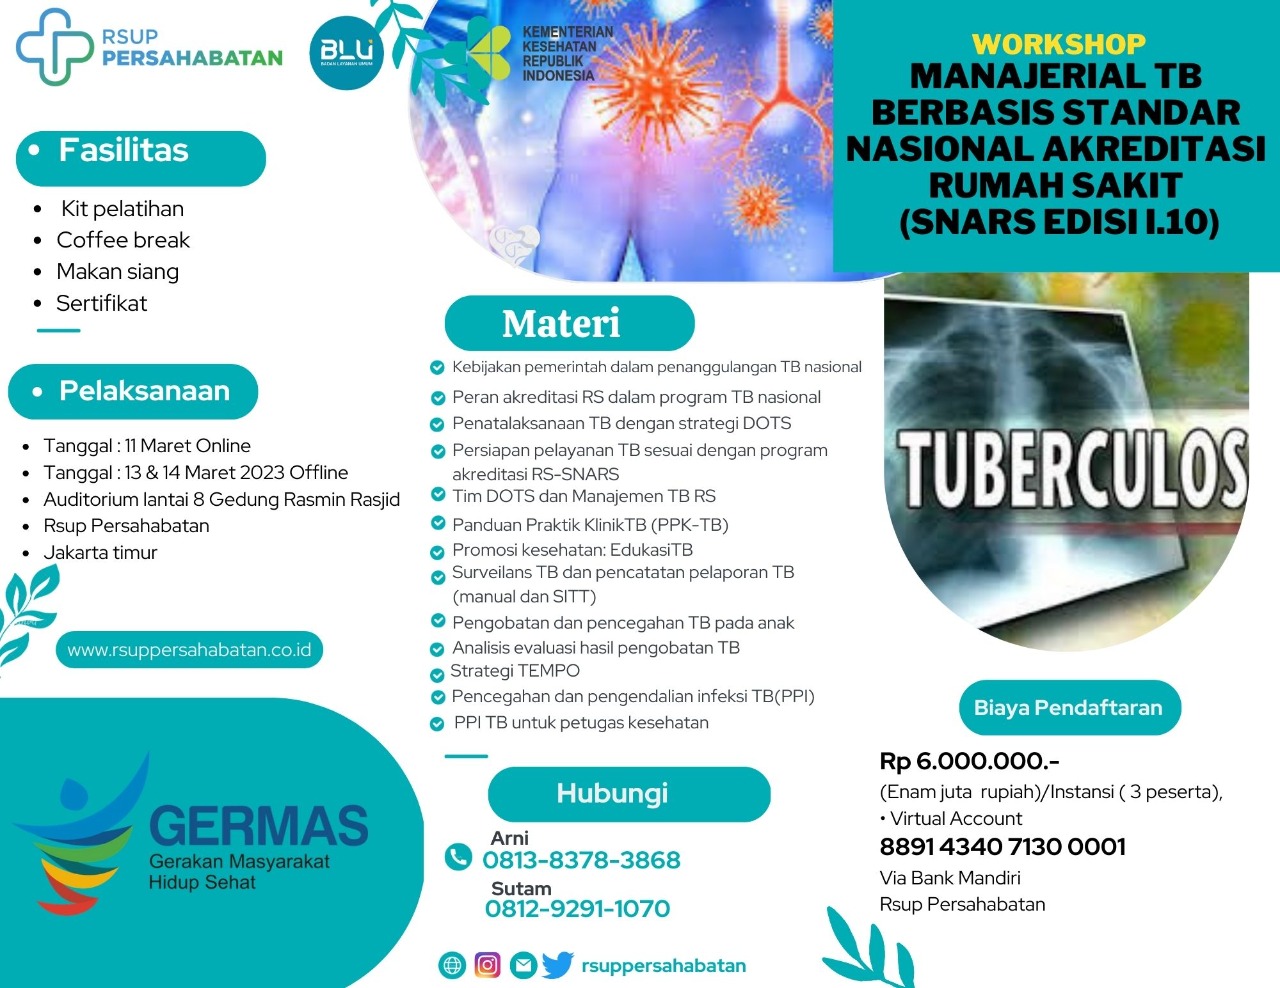 Workshop TB Berbasis Standar Nasional Akreditasi Rumah Sakit (Snars edisi I.10)